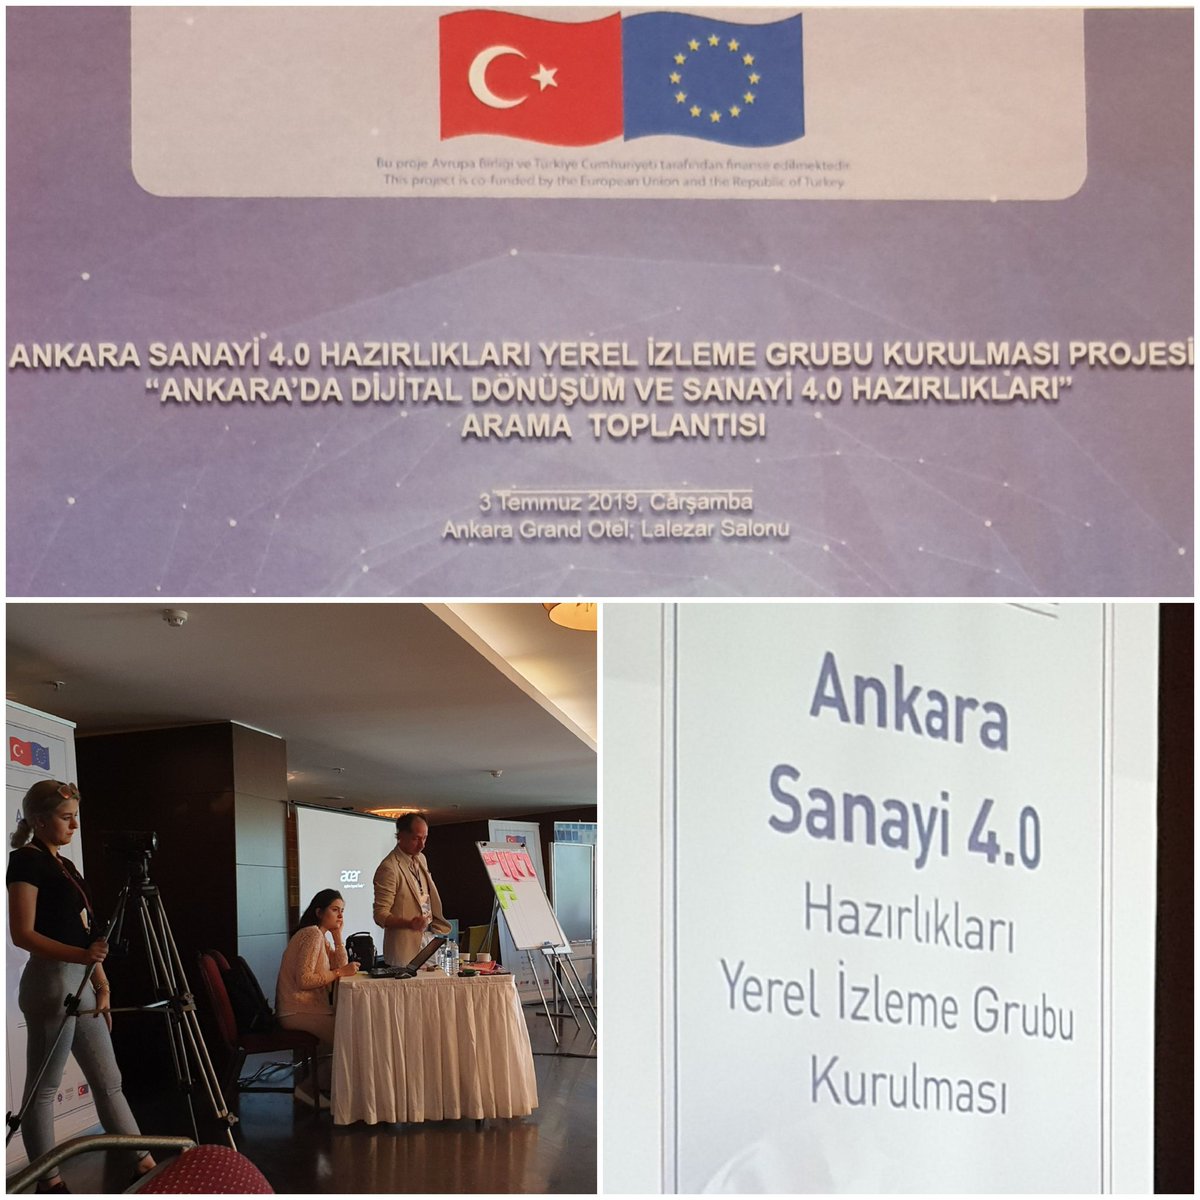 Ankara Sanayi 4.0 Hazırlıkları Yerel Izleme Grubu Arama Toplantısı

#Simsoft #Simovate #Dijital #Dijitaldönüşüm #Sanayi40 #Ankarasanayi40